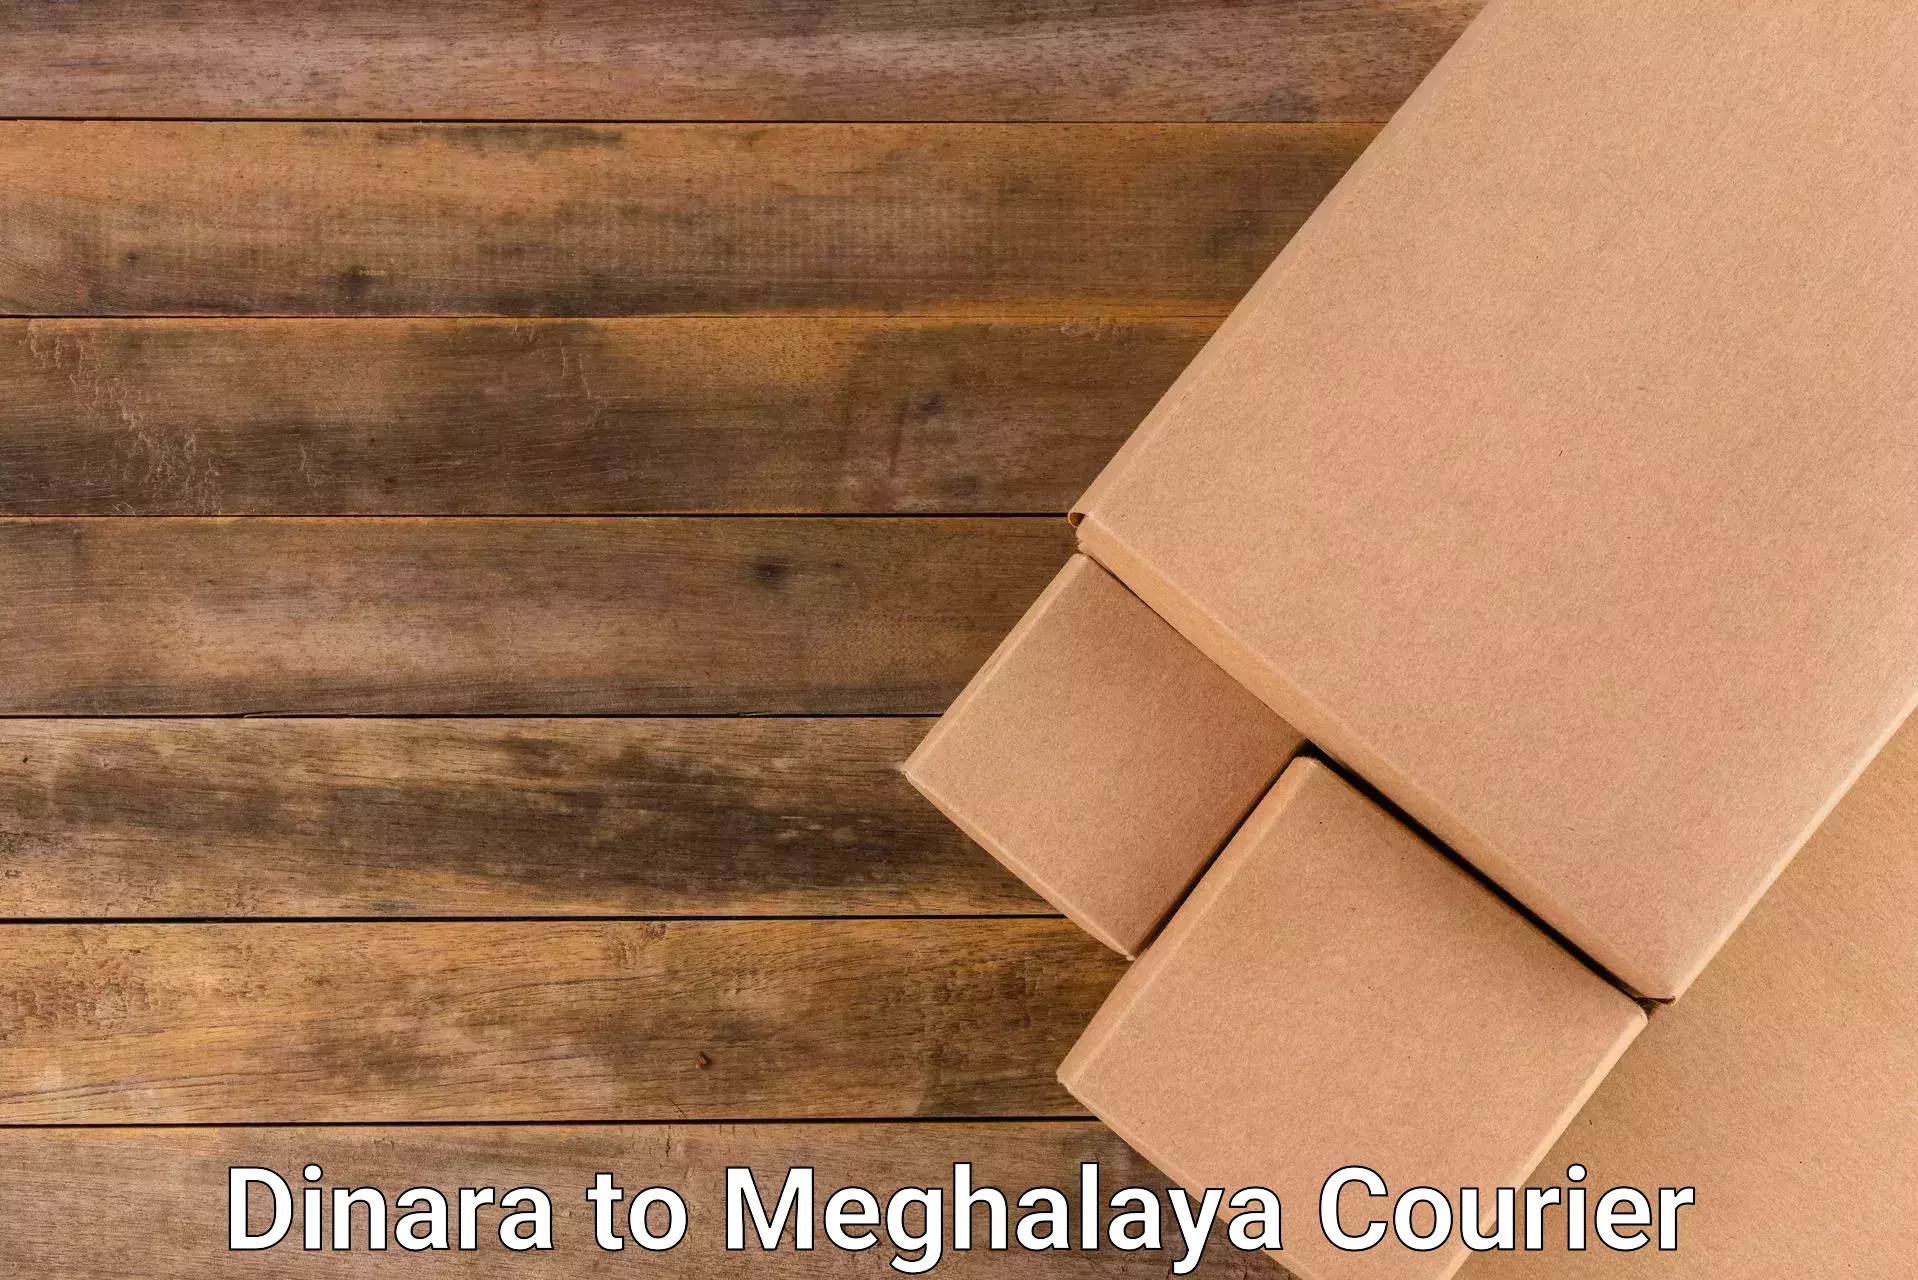 Courier app Dinara to Meghalaya